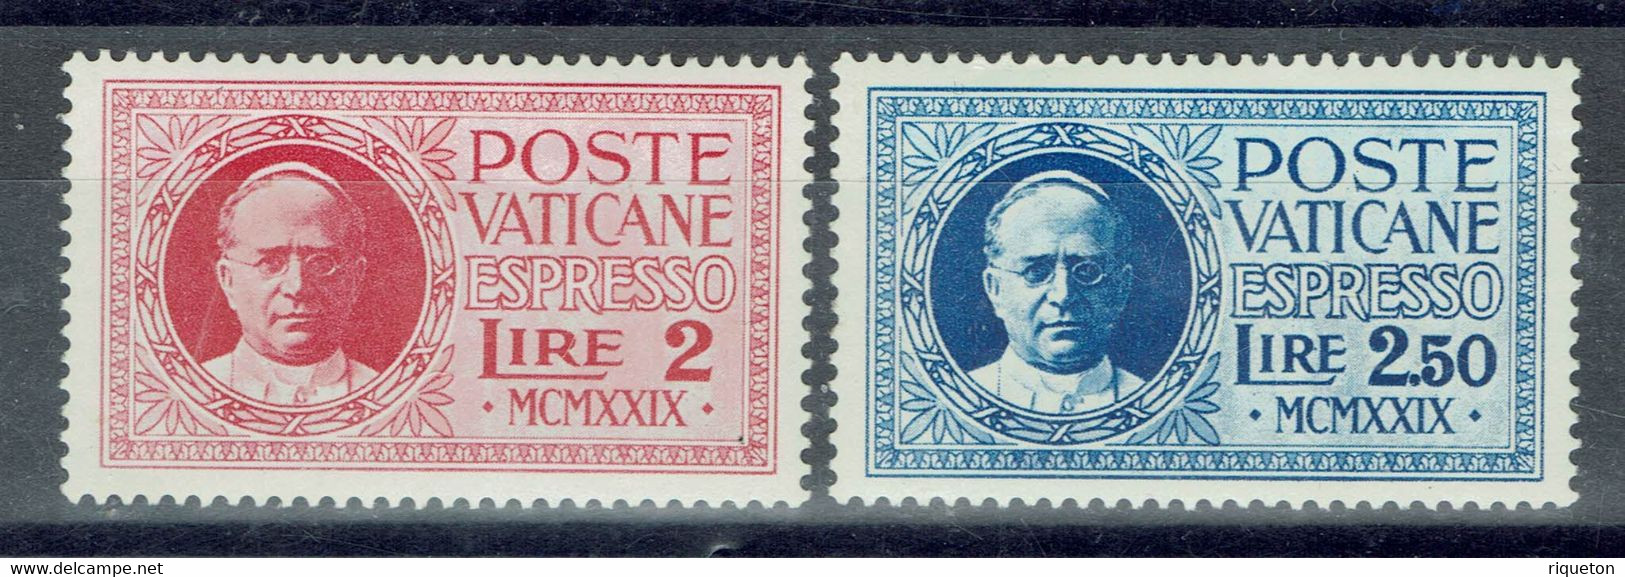 Vatican - 1929 - Timbres Pour Lettres Par Exprès - N° 1 & 2 - Neufs - XX - MNH - - Priority Mail